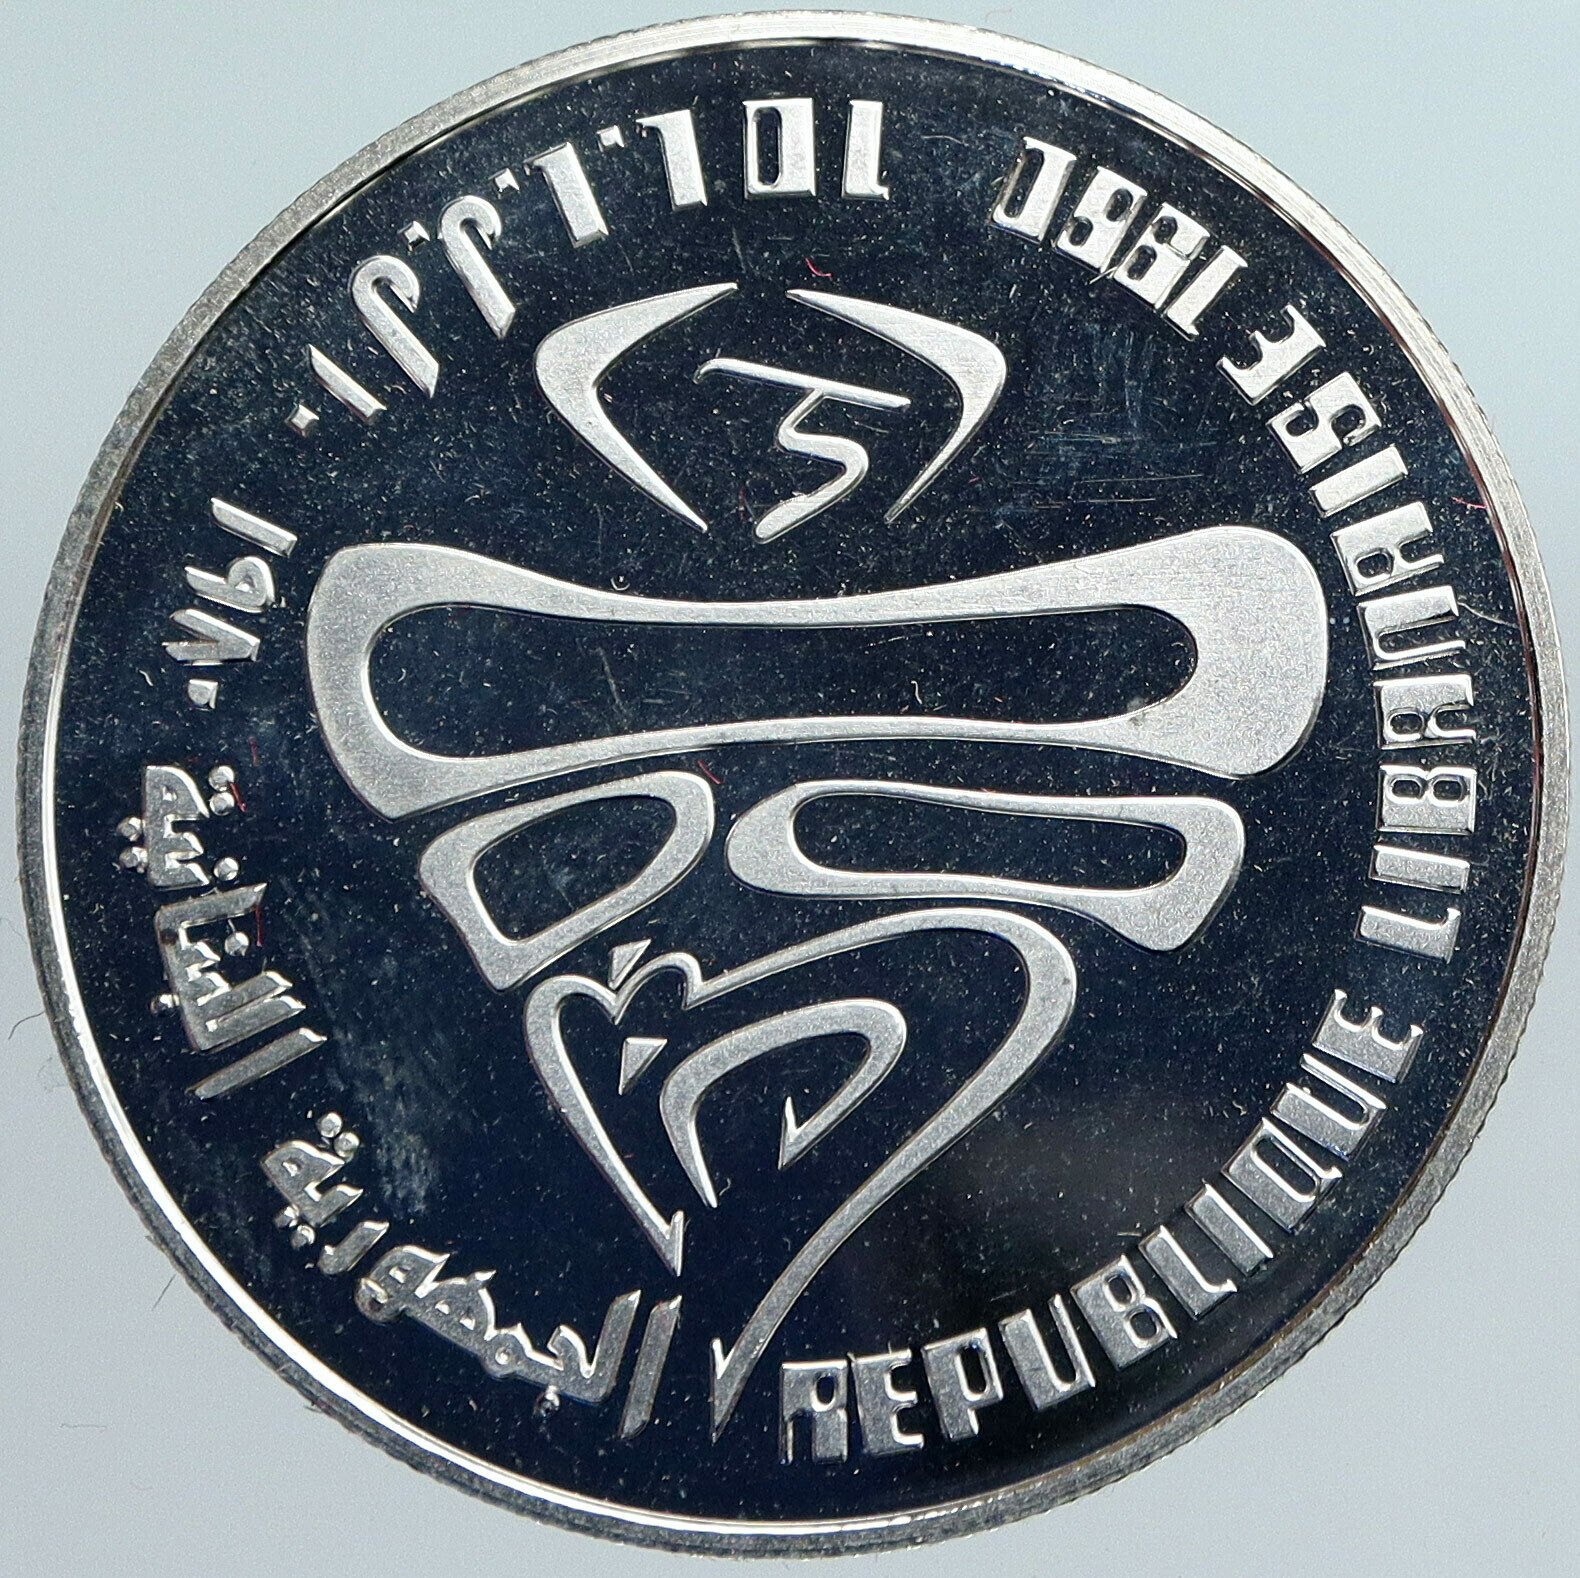 1980 LEBANON Lake Placid NY USA OLYMPICS VINTAGE Silver 10 Livres Coin i88089